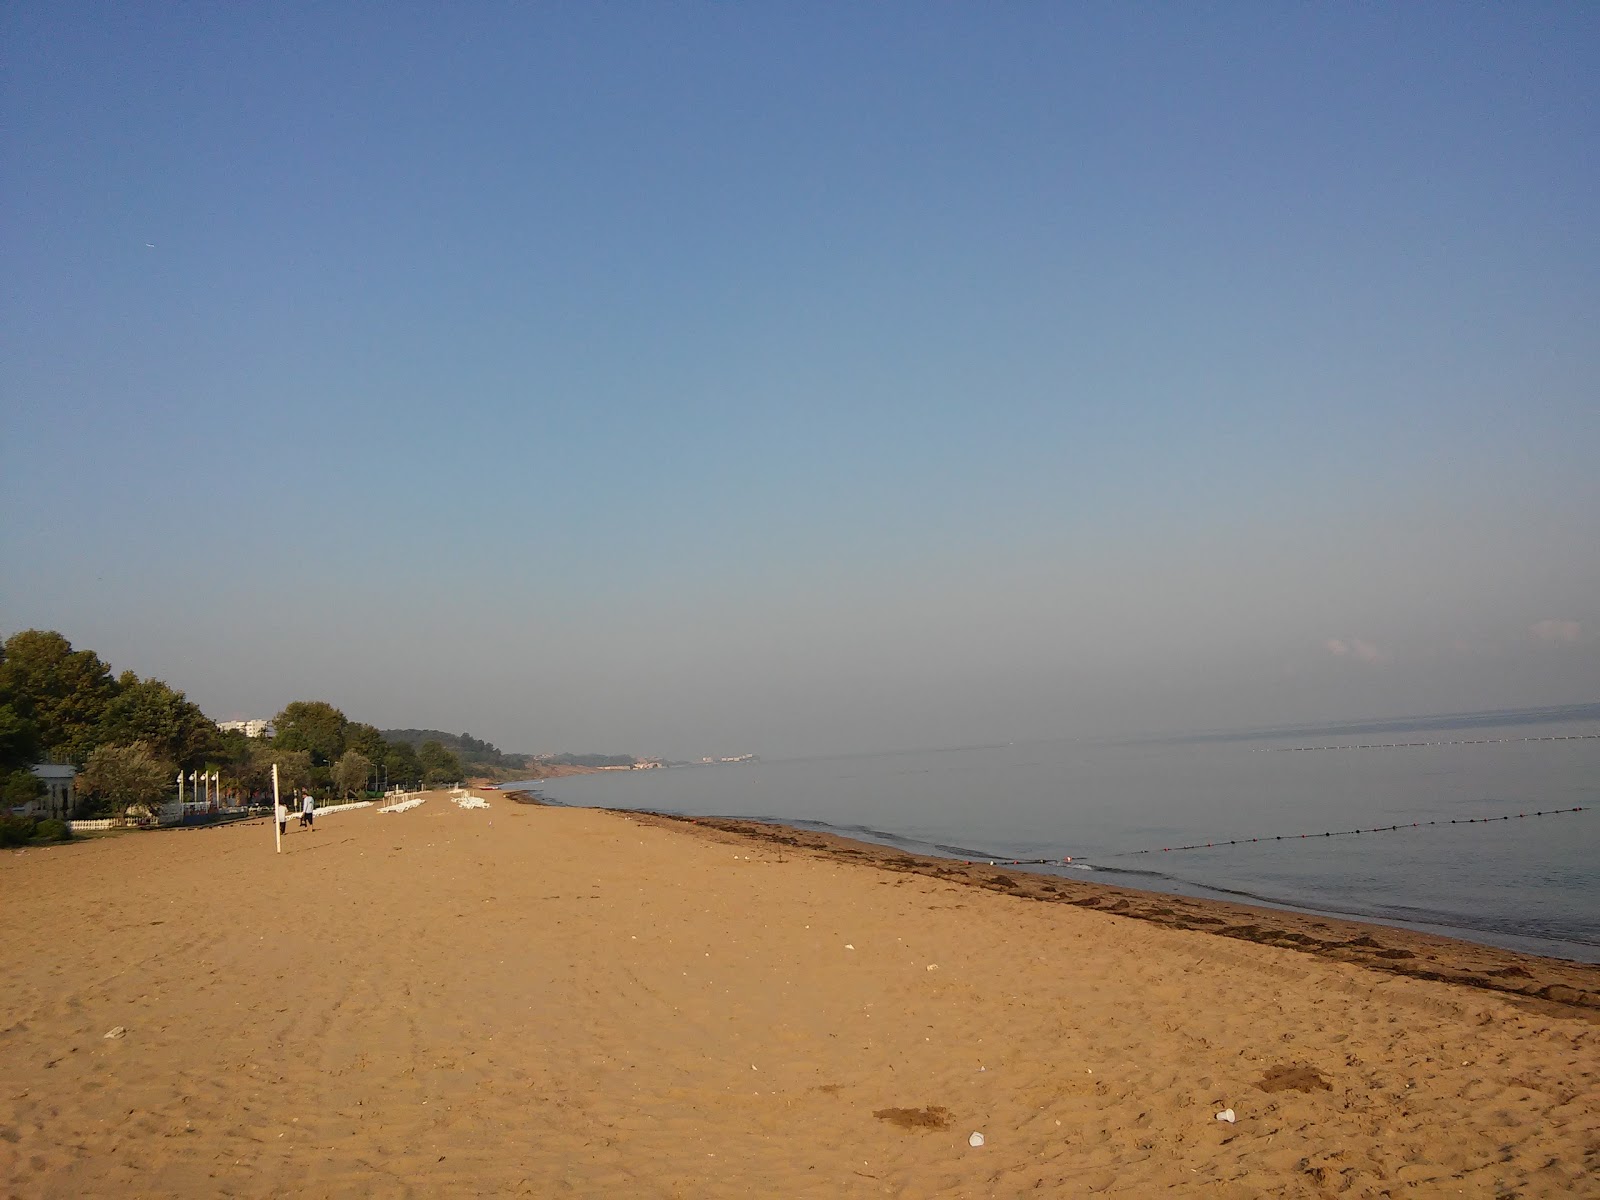 Fotografie cu Yalova Plaji zonă de stațiune de pe plajă